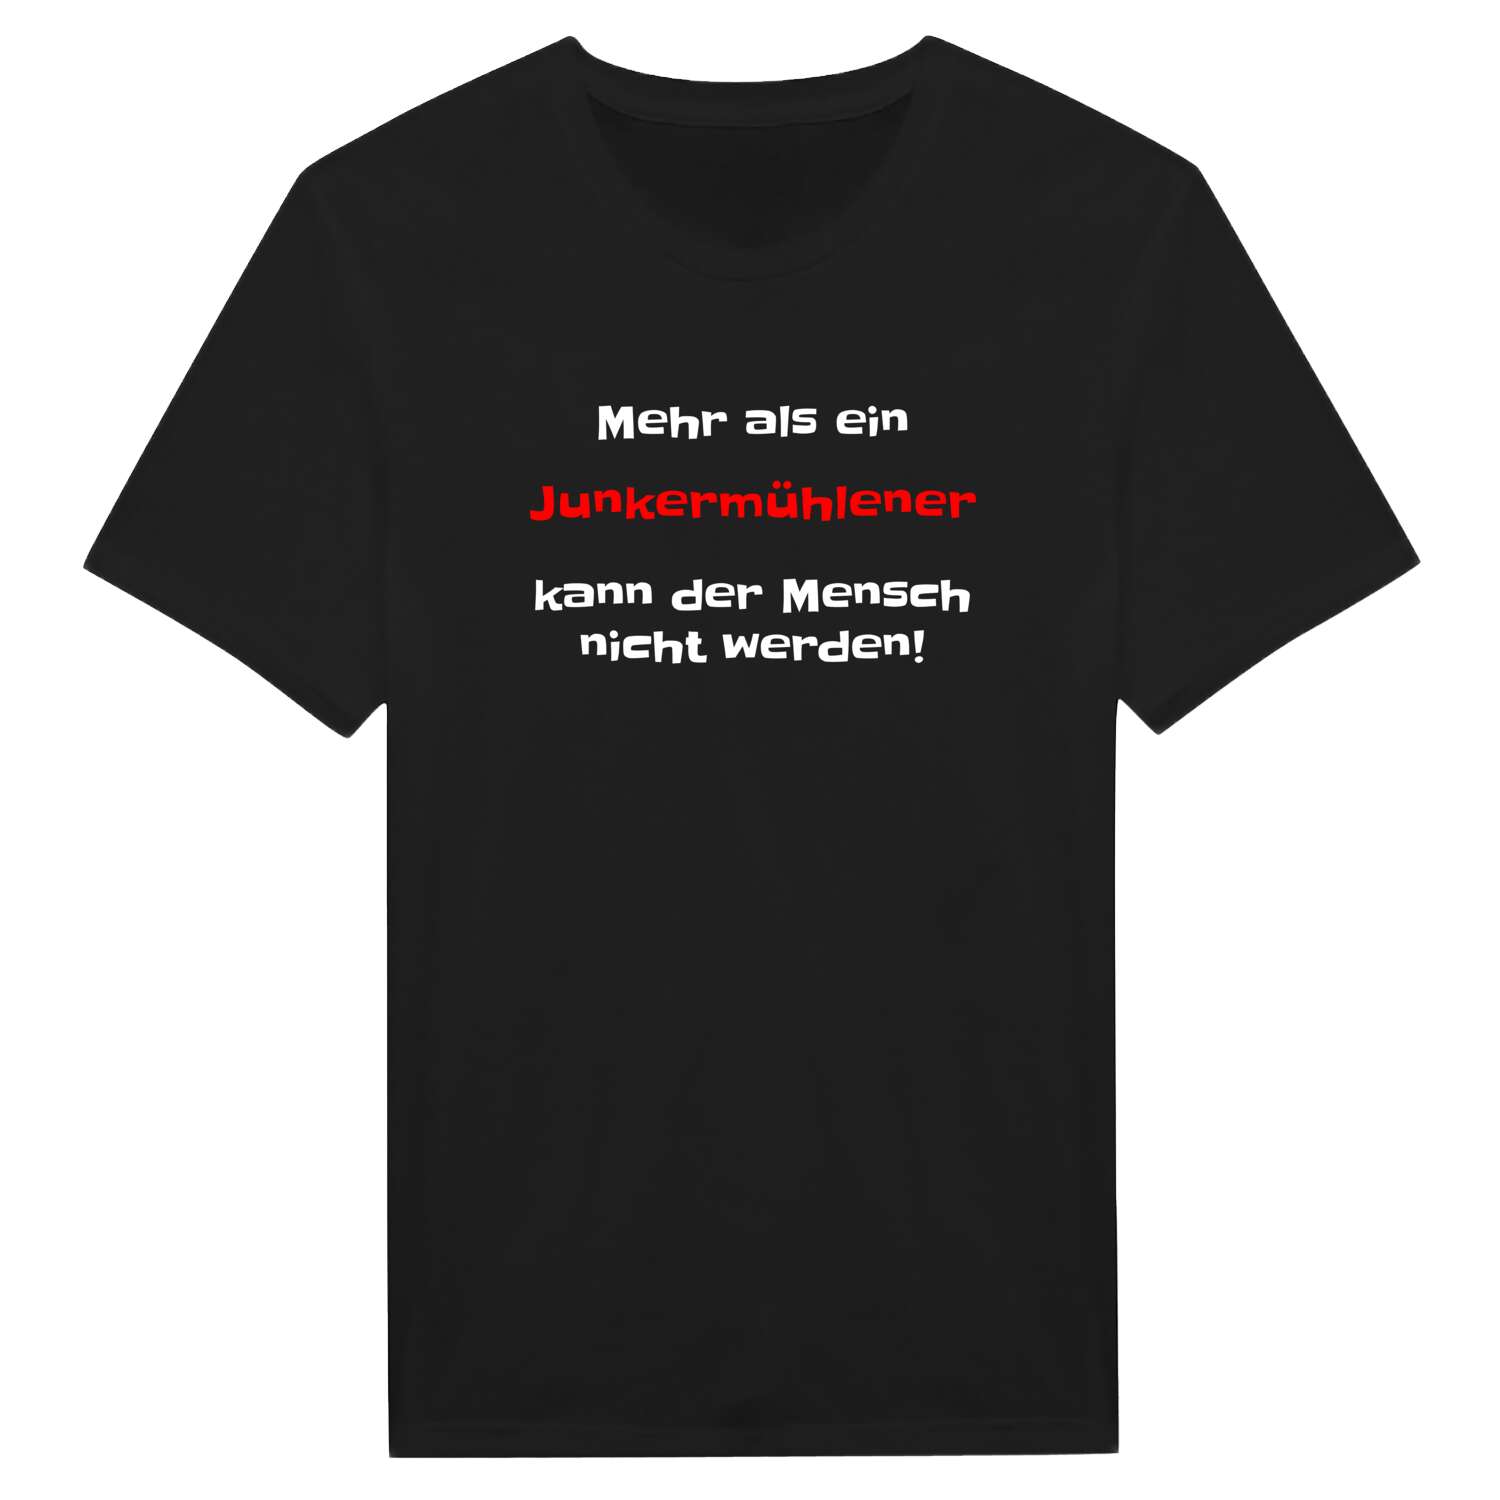 Junkermühle T-Shirt »Mehr als ein«